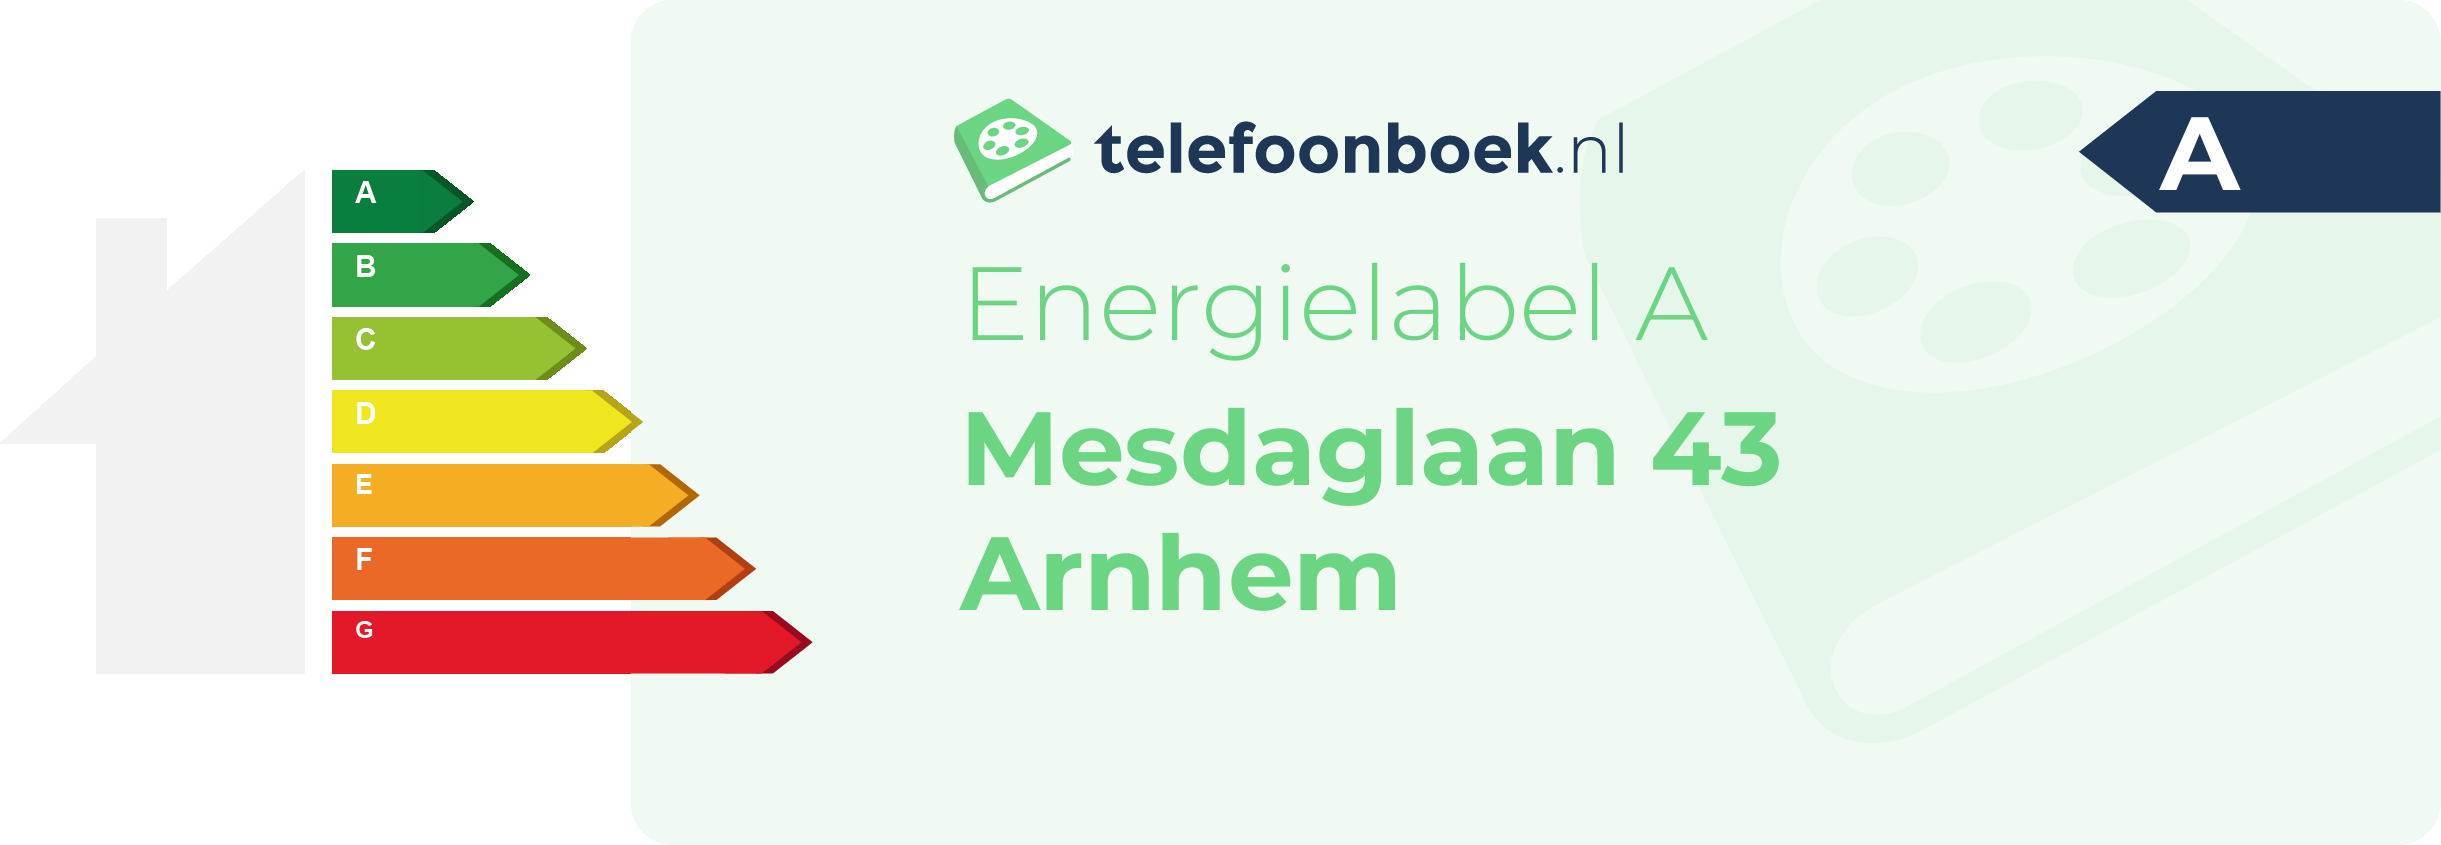 Energielabel Mesdaglaan 43 Arnhem